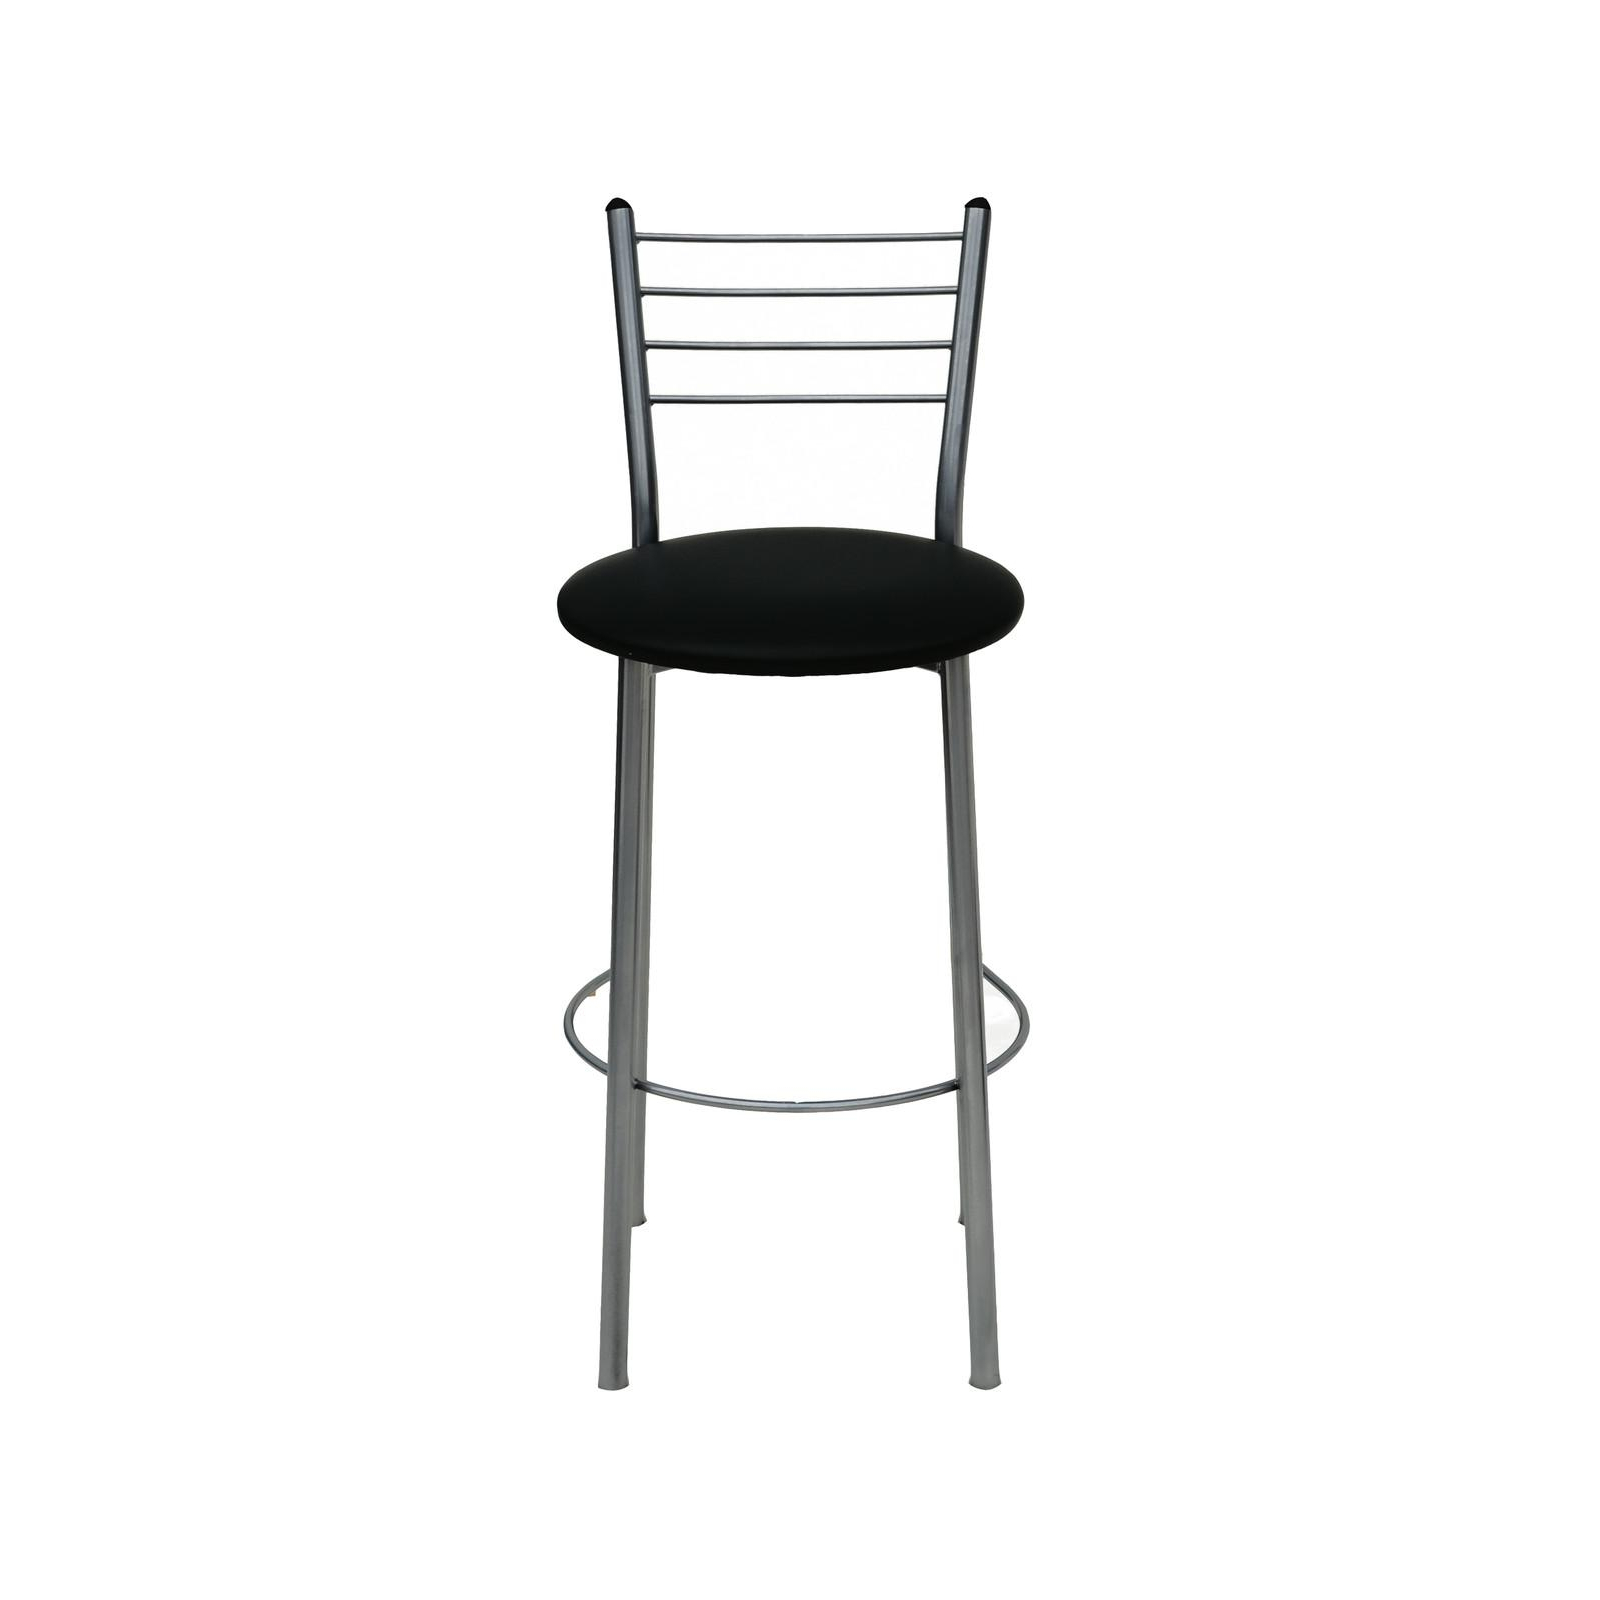 Барный стул Примтекс плюс барный 1022 Hoker alum CZ-3 Black (1022 HOKER alum CZ-3)